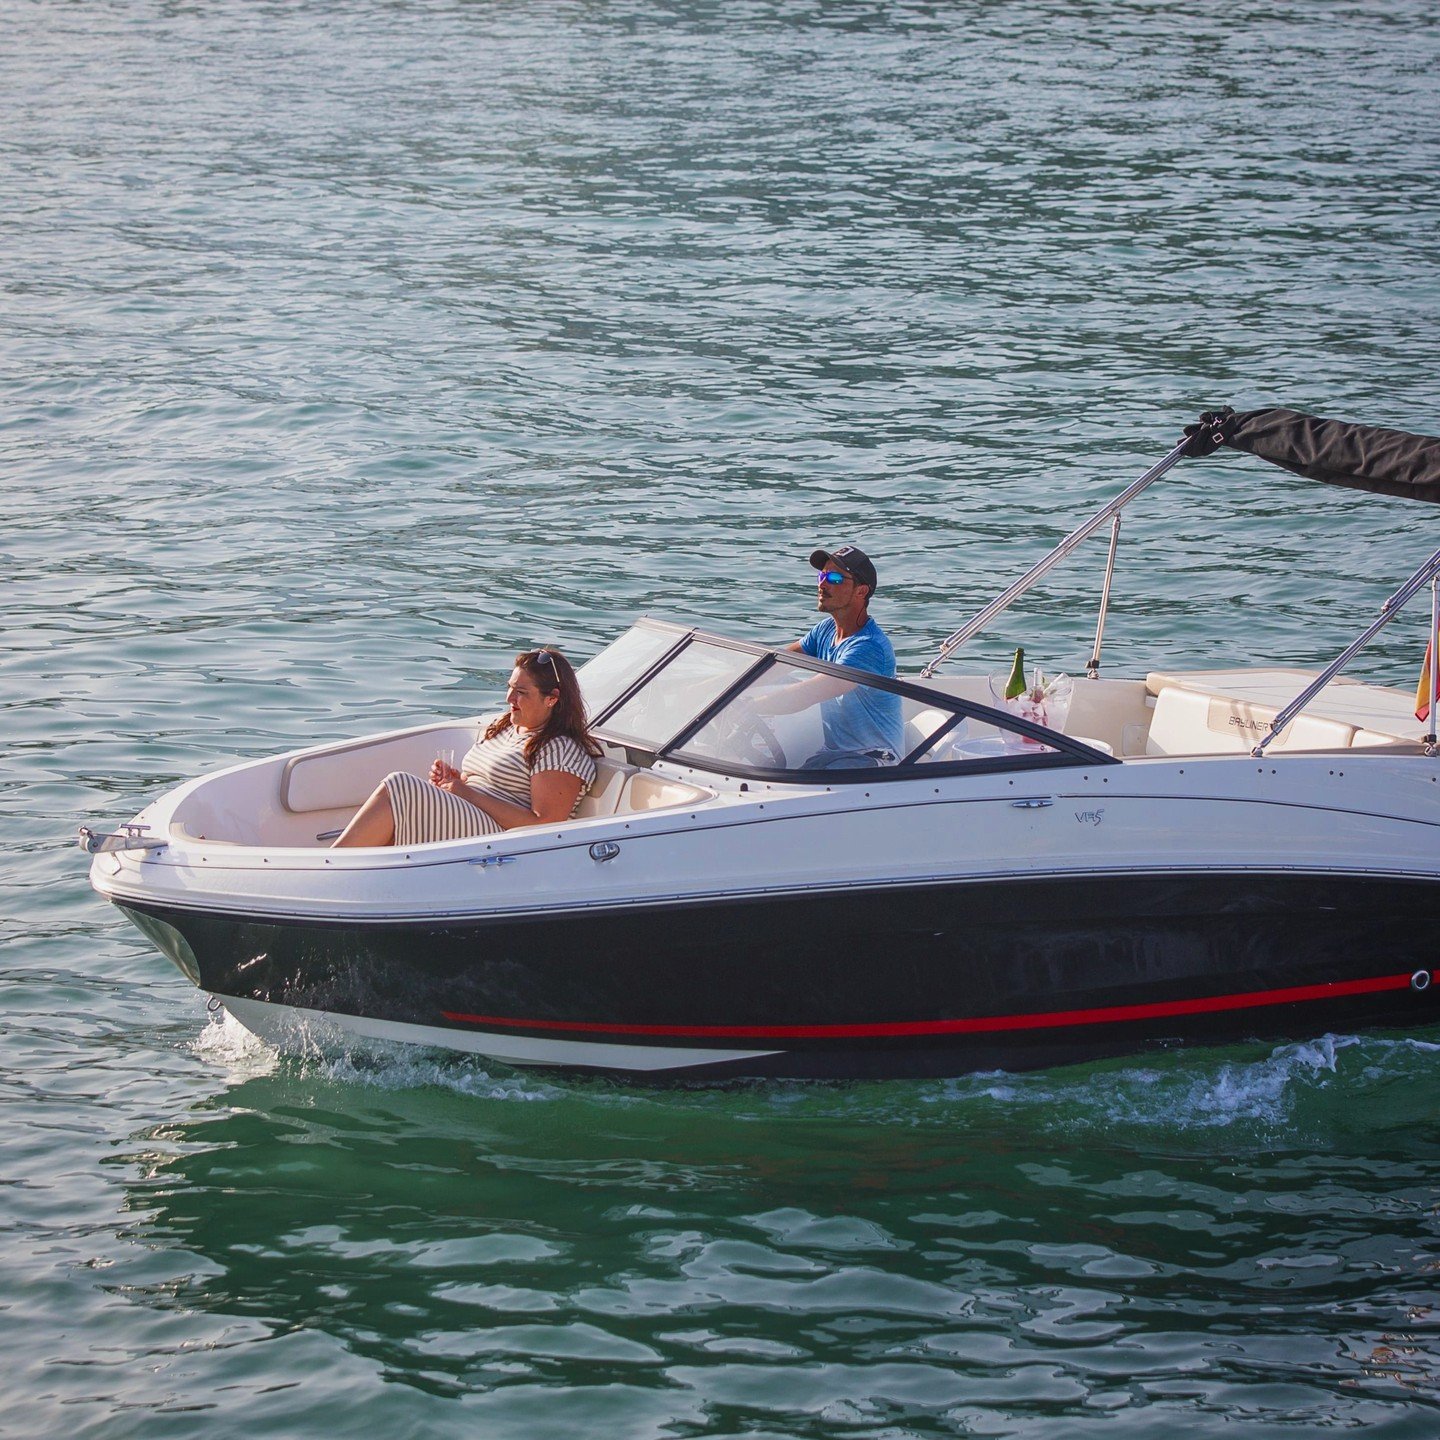 Alquila el barco Bayliner VR5 para un paseo de 4 horas y disfruta de una experiencia &uacute;nica a tu propio ritmo. Explora la prestigiosa Milla de Oro de Marbella en una embarcaci&oacute;n de 6 metros, si cuentas con la licencia de navegaci&oacute;